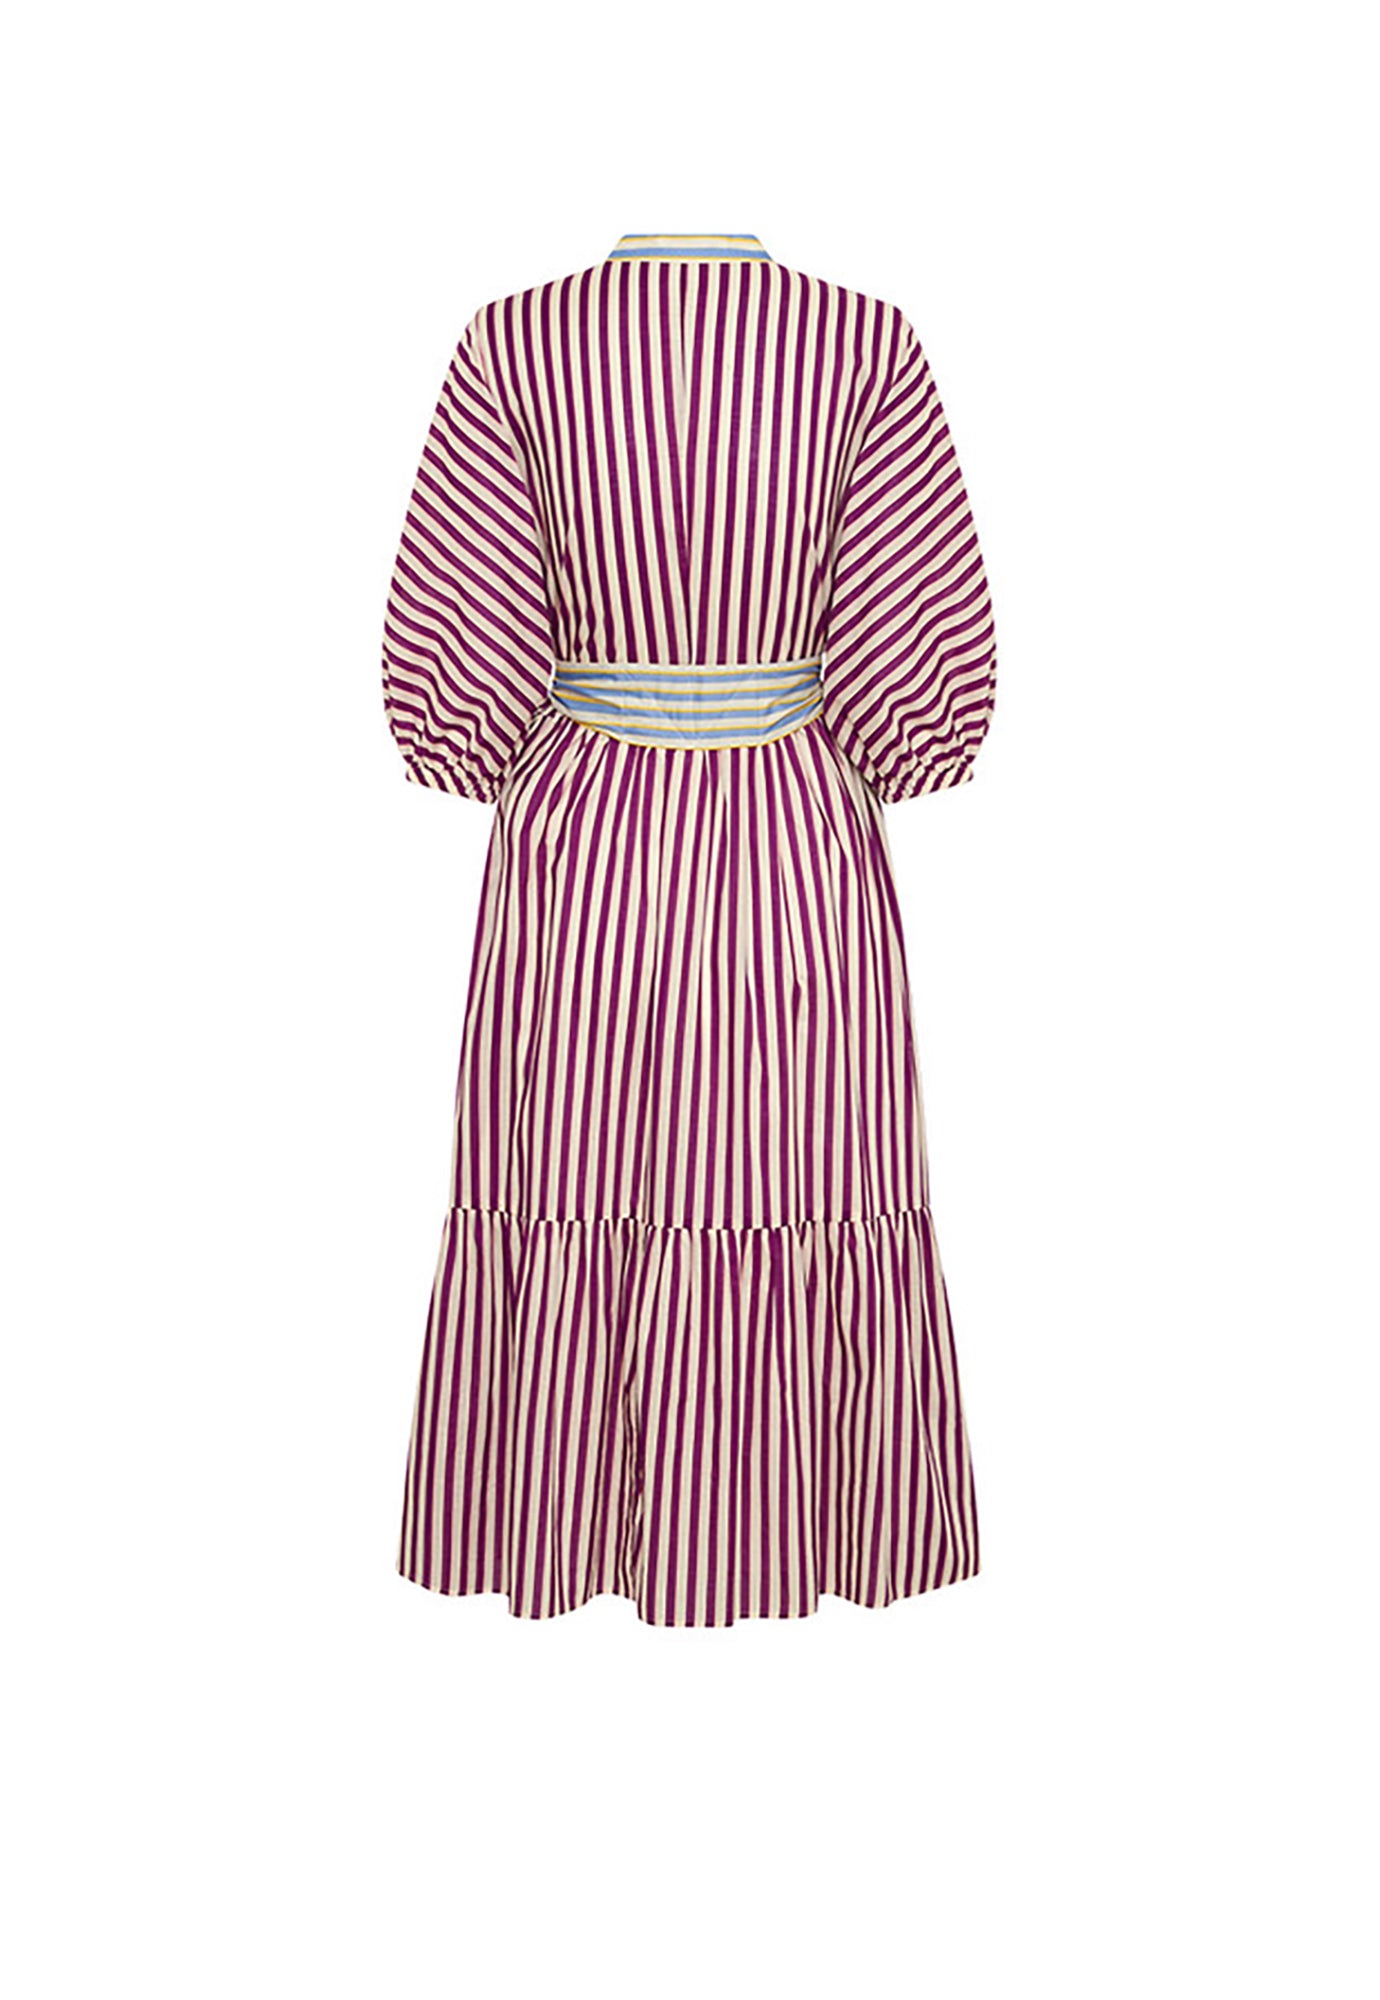 bohemian traders - dolman shirt dress - grape stripe